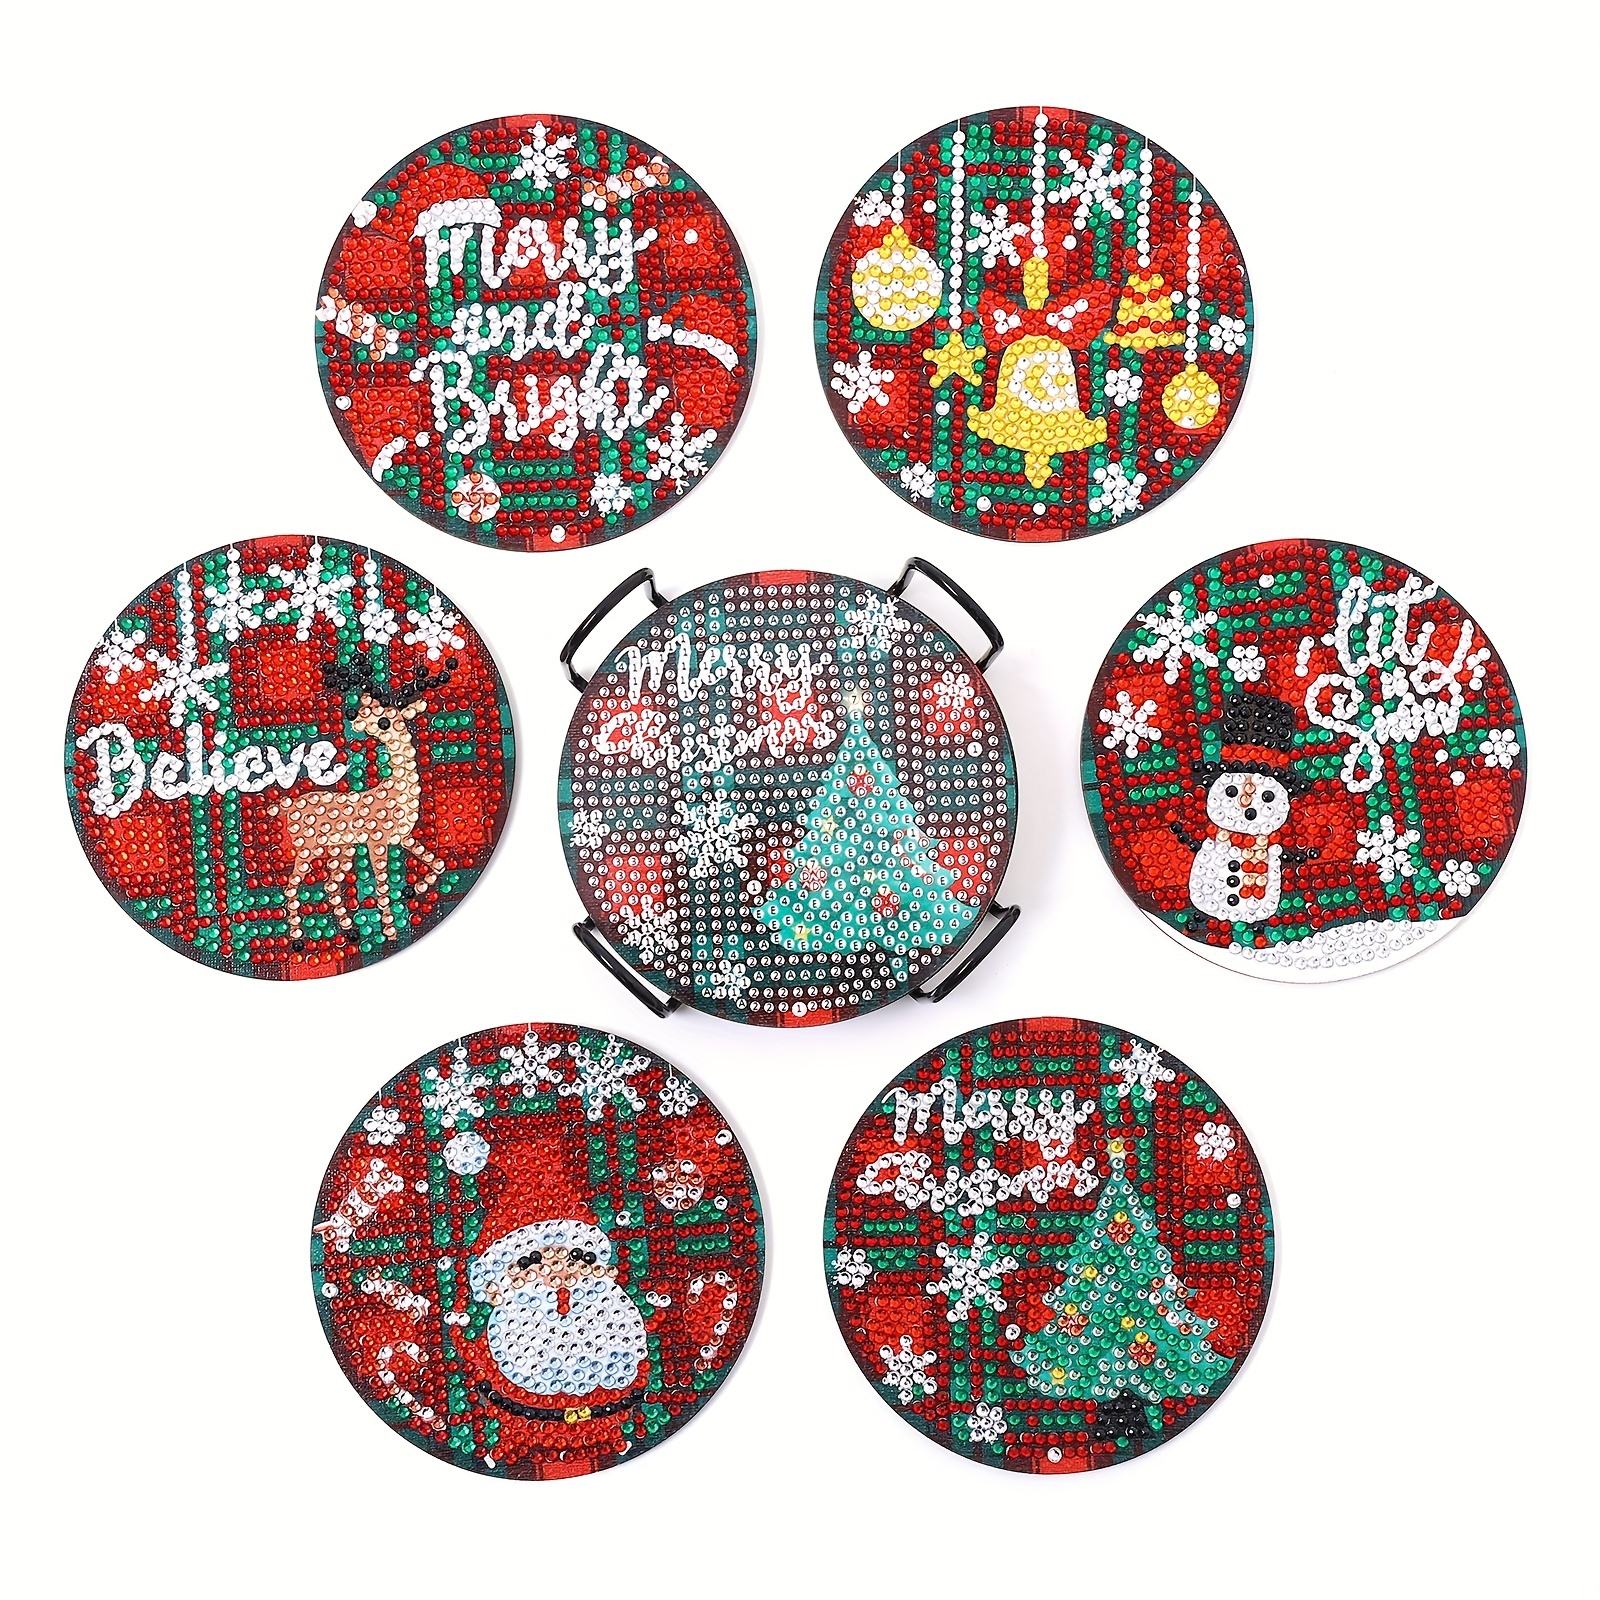  Rhuyoshn 6 Pcs Christmas Diamond Painting Coasters Kit